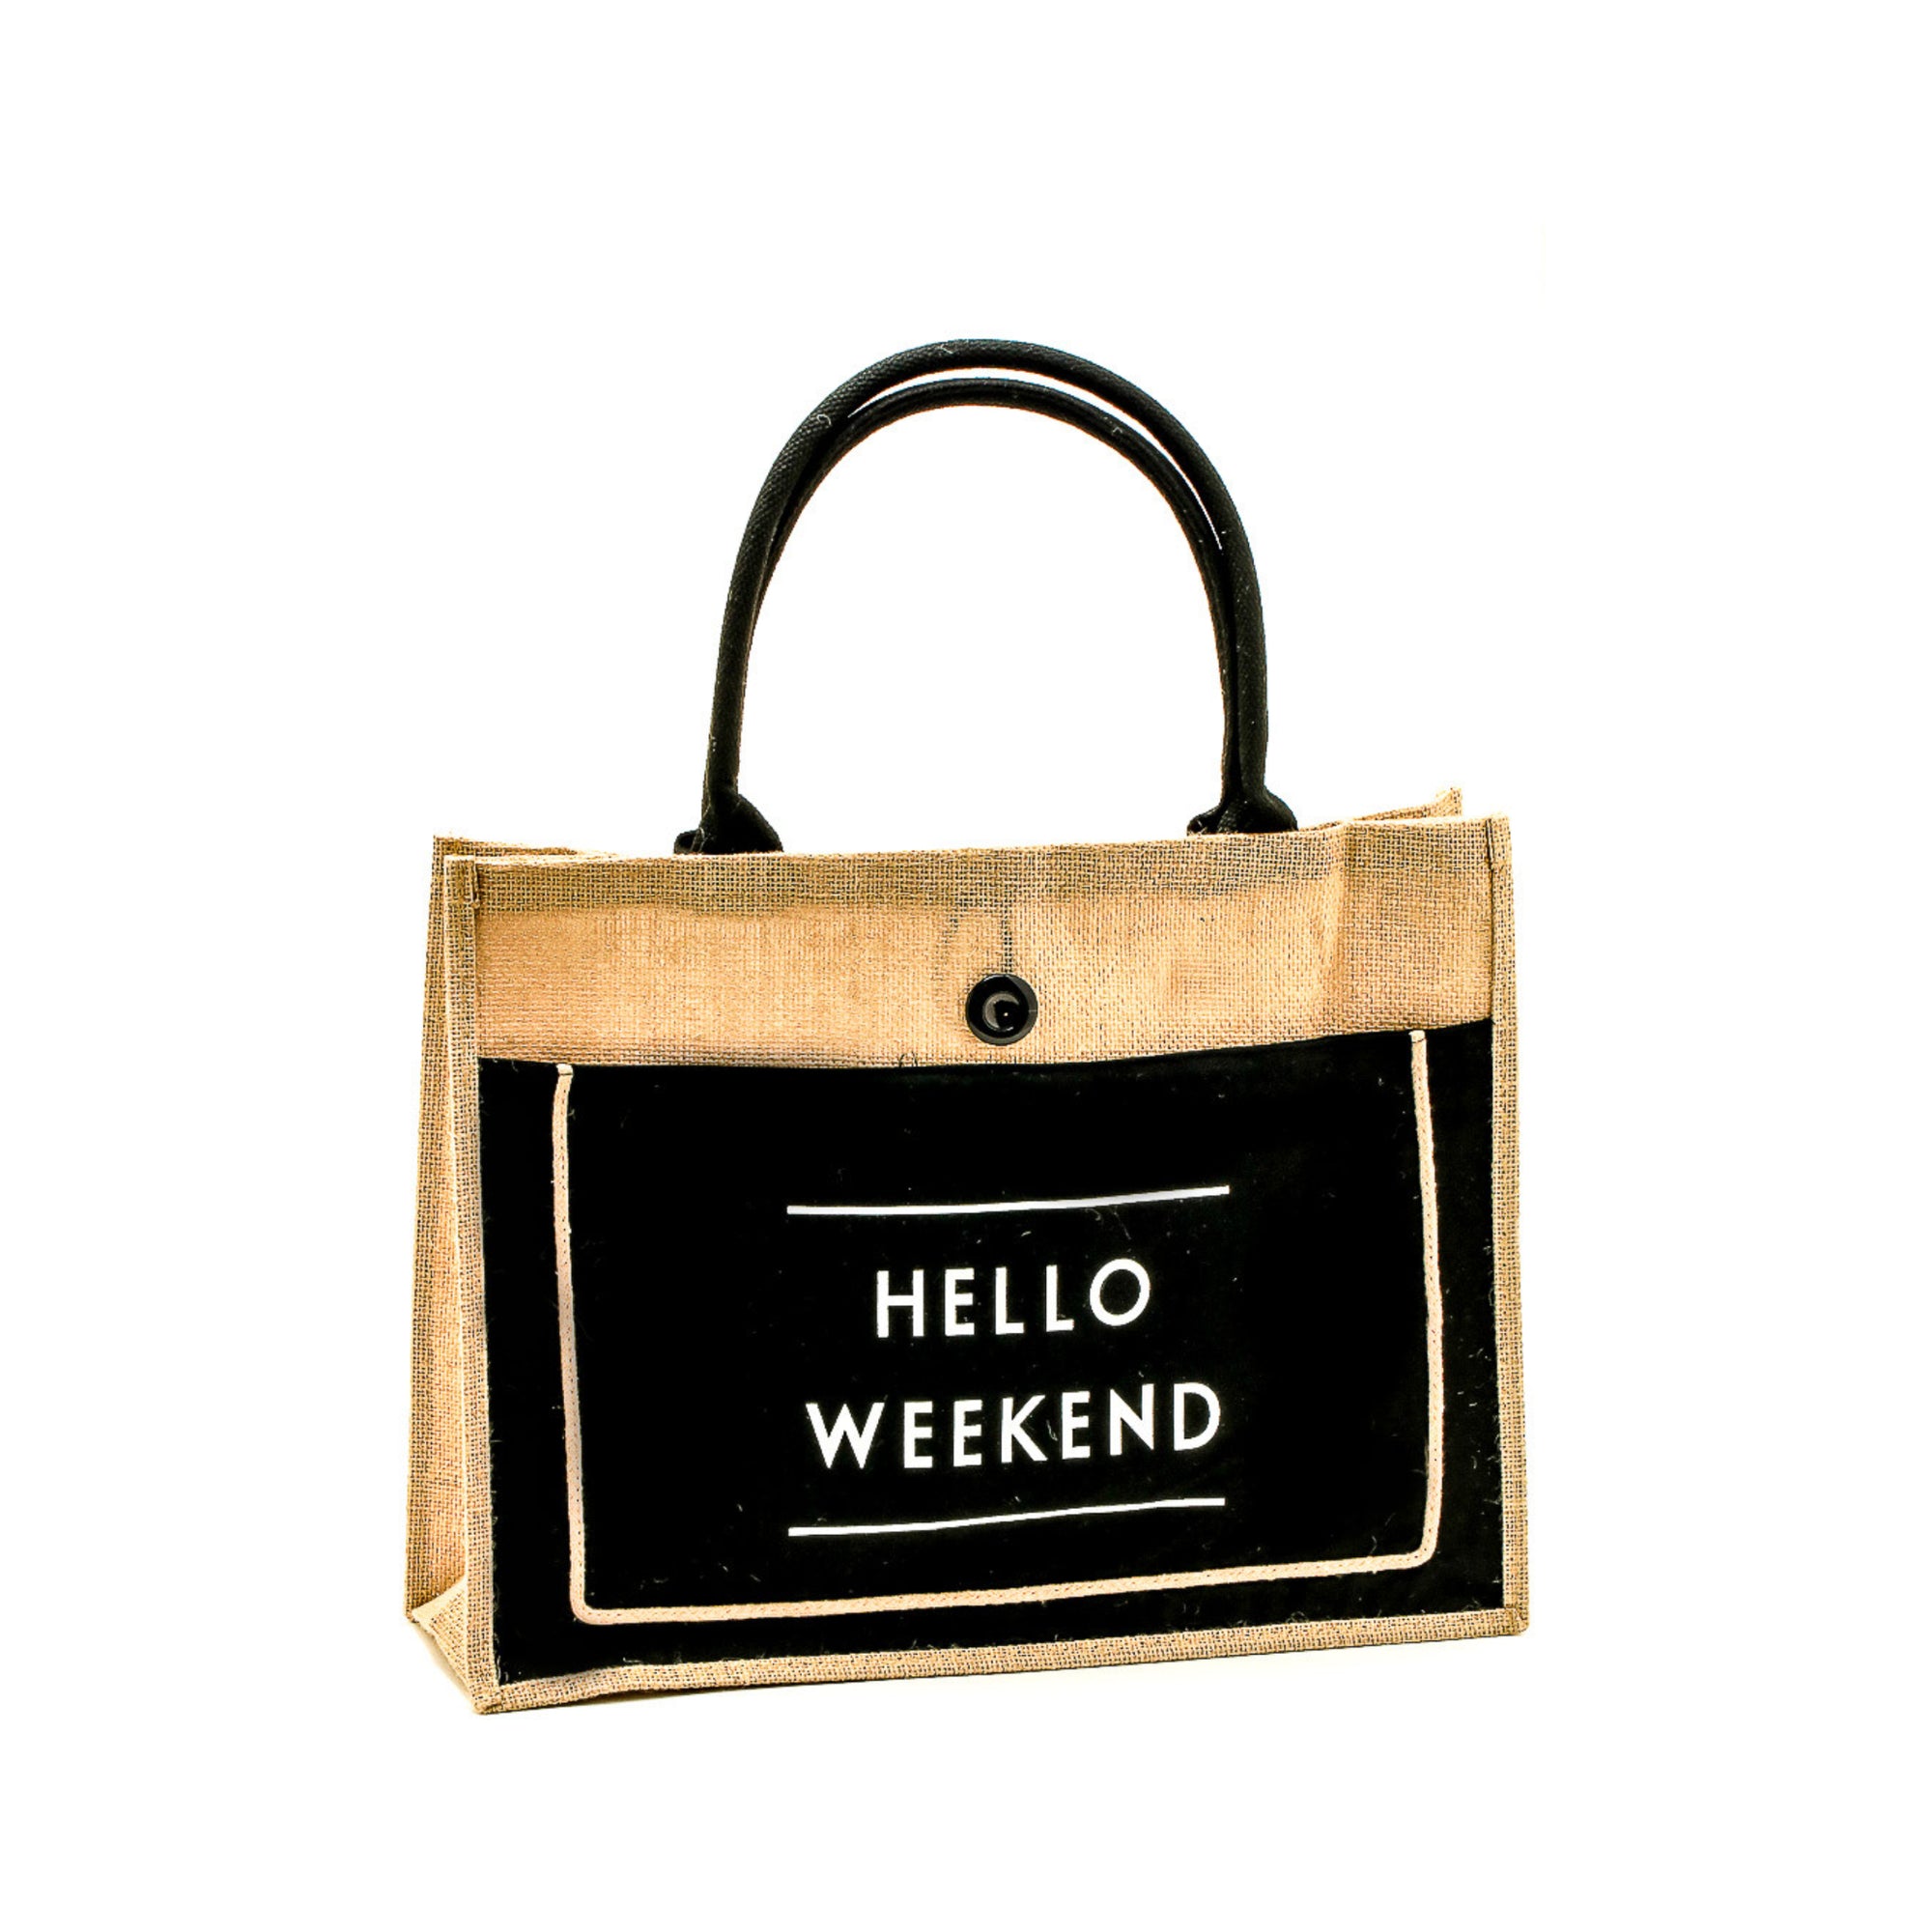 Burlap Hello Weekend Tote Bag.